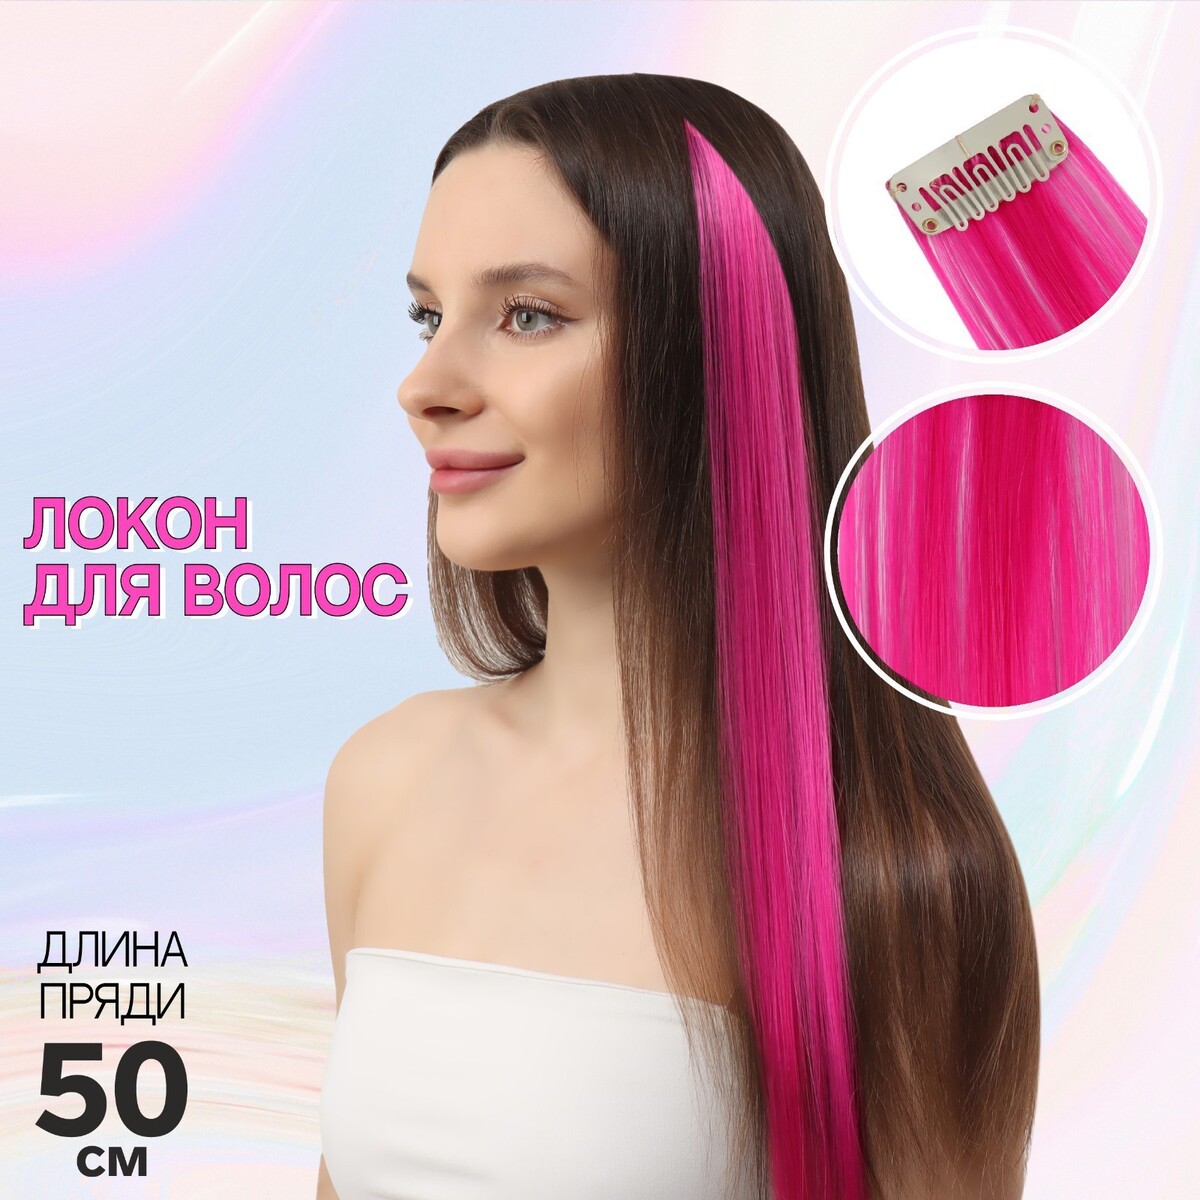 Локон накладной, прямой волос, на заколке, 50 см, 5 гр, цвет розовый локон накладной прямой волос на заколке 50 см 5 гр жёлтый